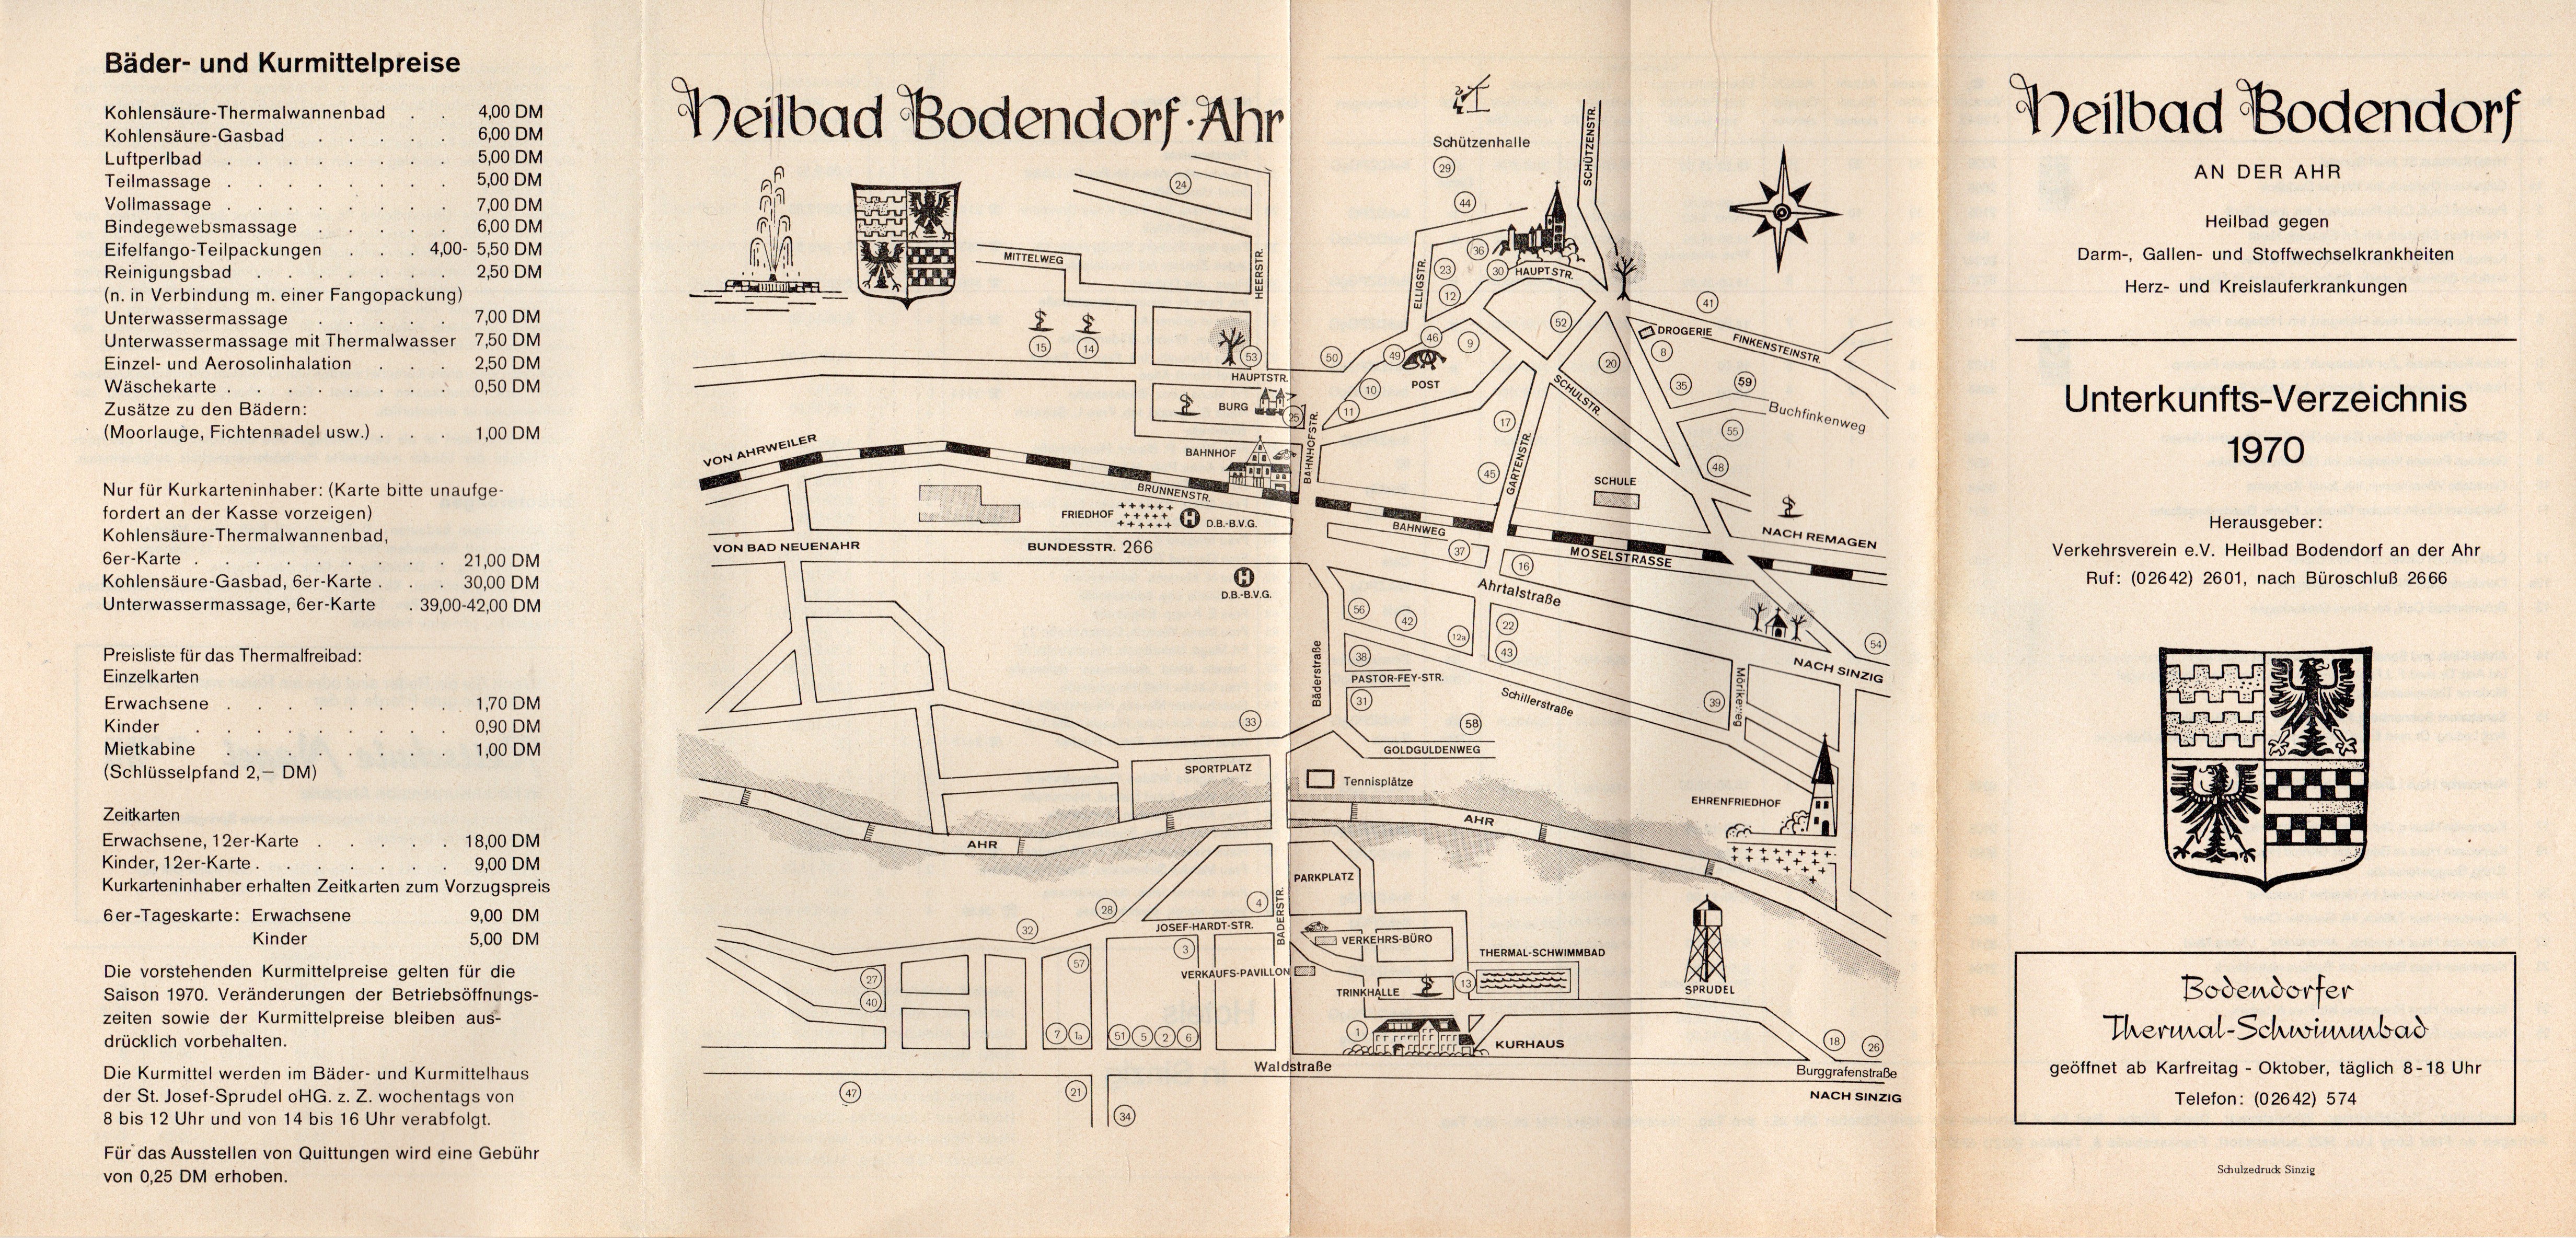 Unterkunfts-Verzeichnis 1970 von Bad Bodendorf (Heimatmuseum und -Archiv Bad Bodendorf CC BY-NC-SA)